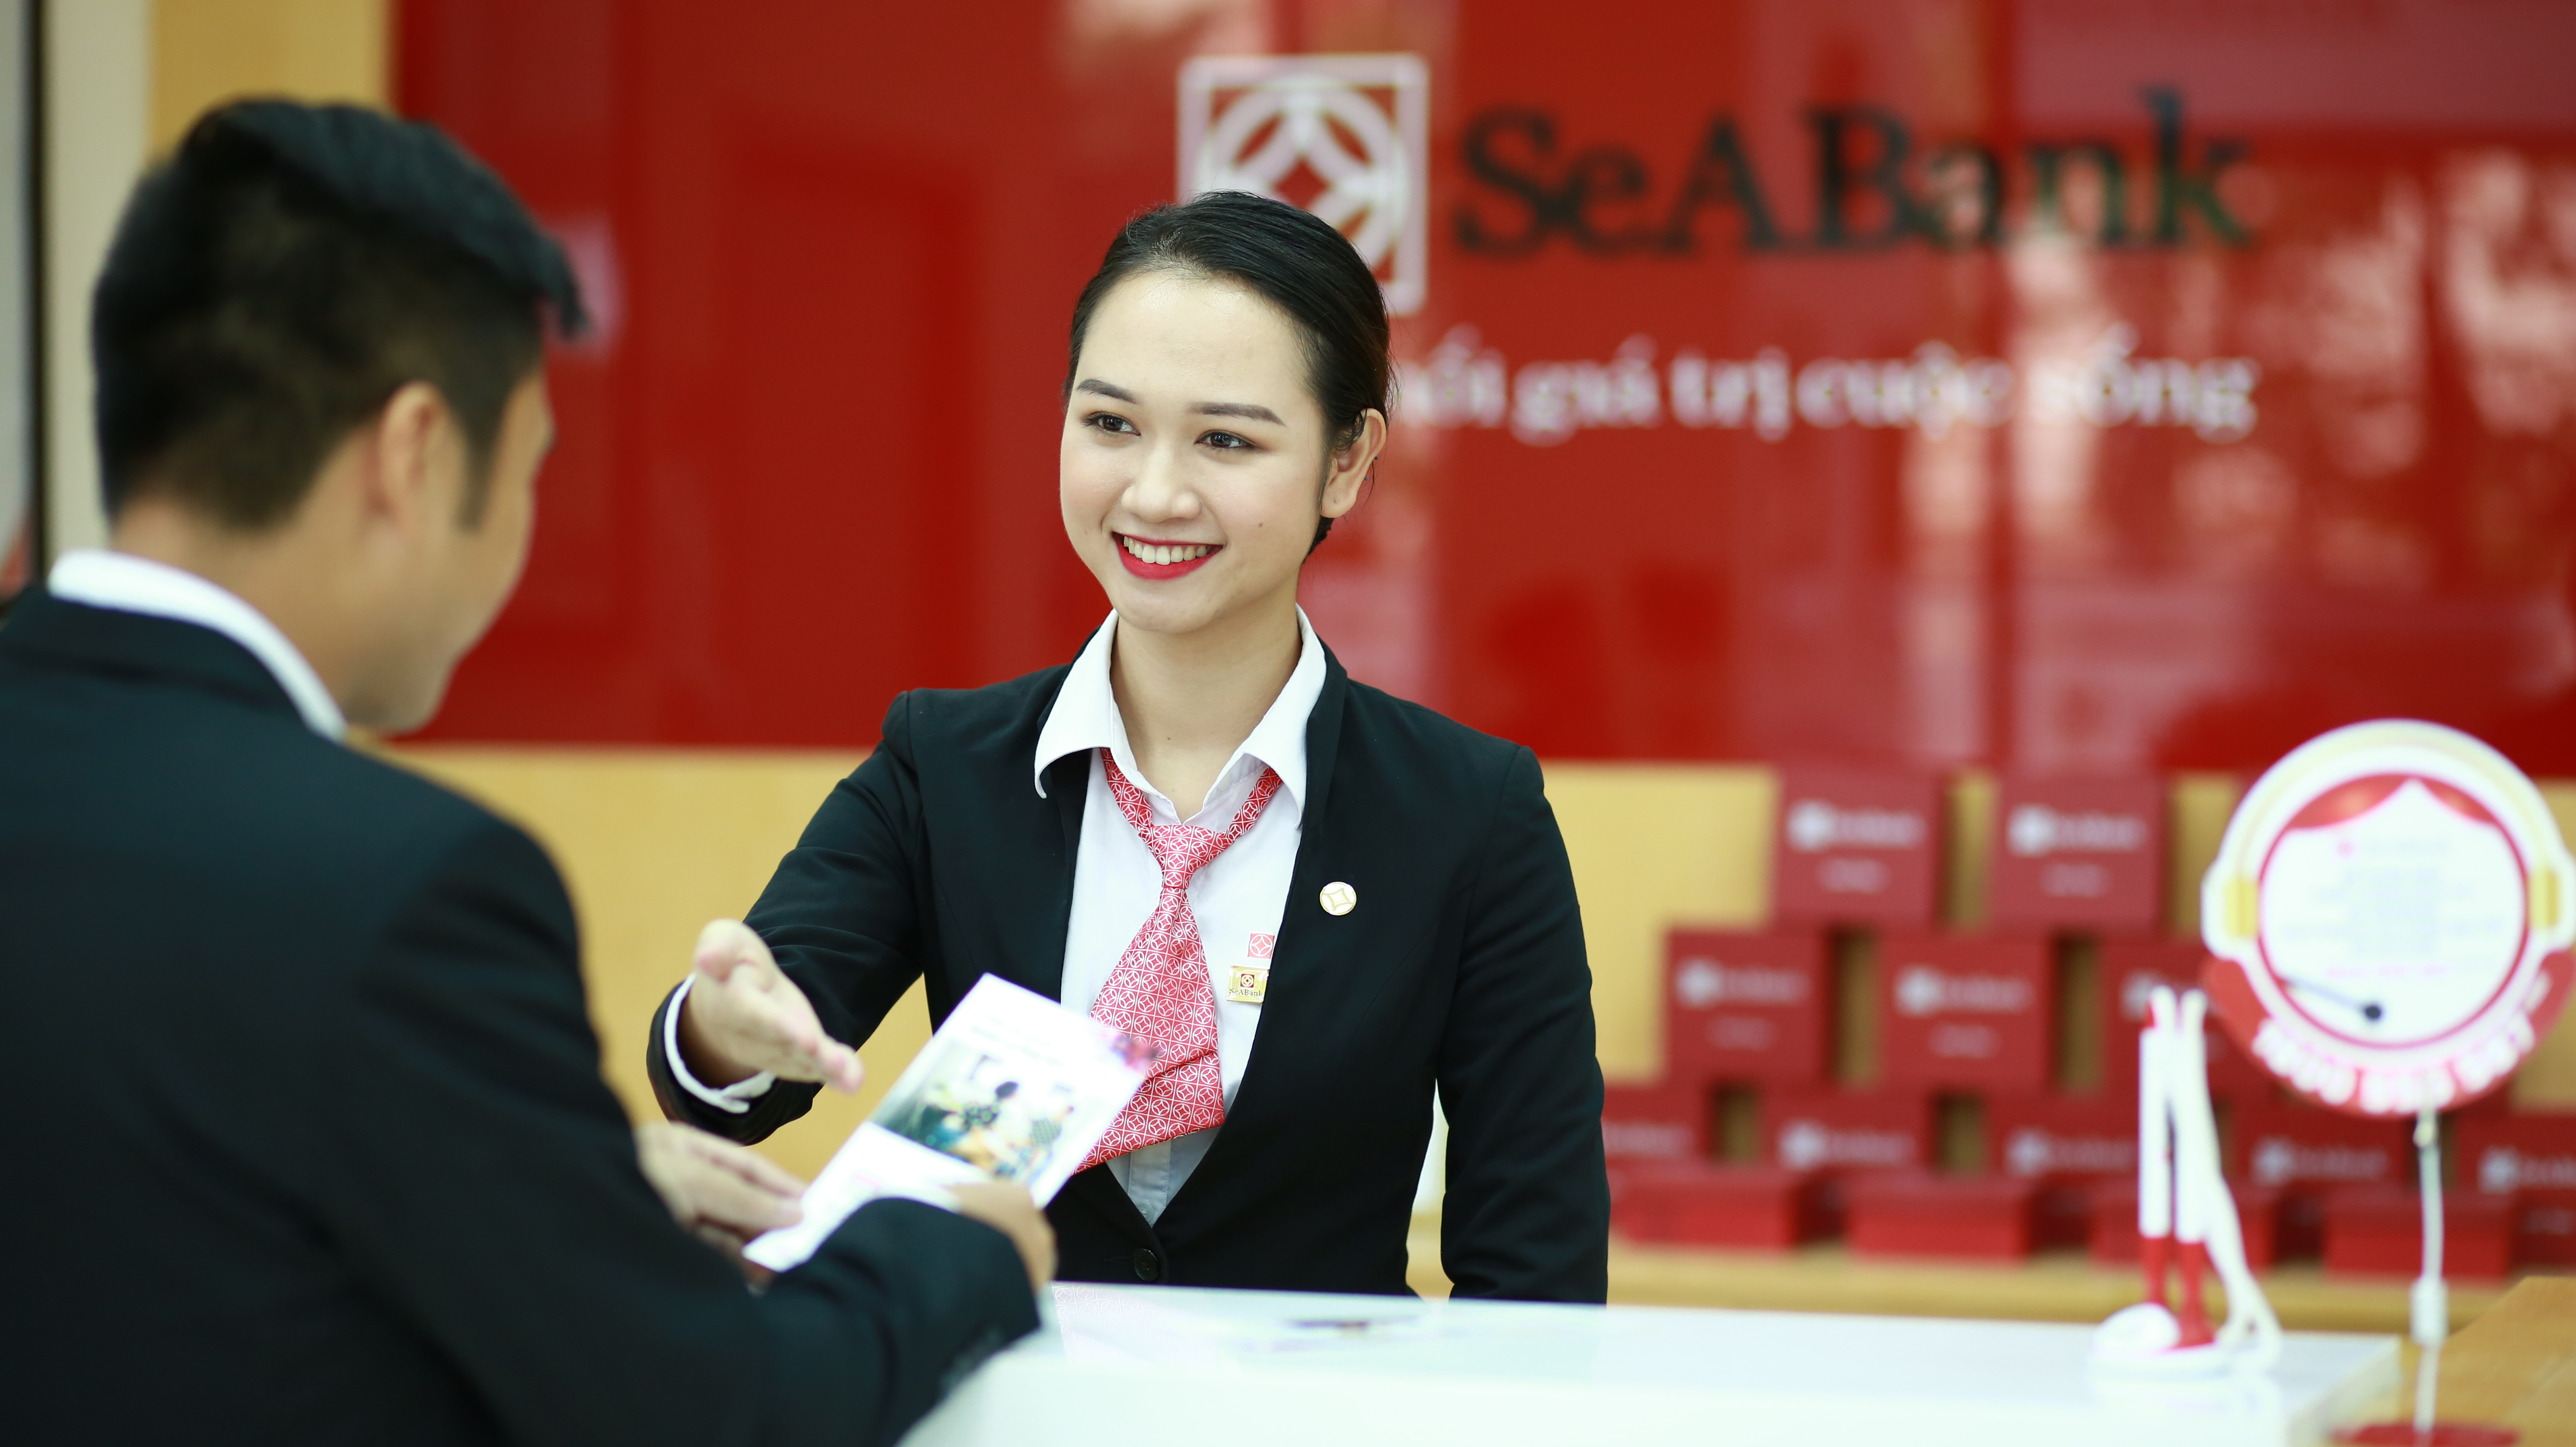 SeABank tăng vốn điều lệ lên gần 12.088 tỷ đồng và được chấp thuận niên yết trên HOSE - Nhịp sống kinh tế Việt Nam & Thế giới